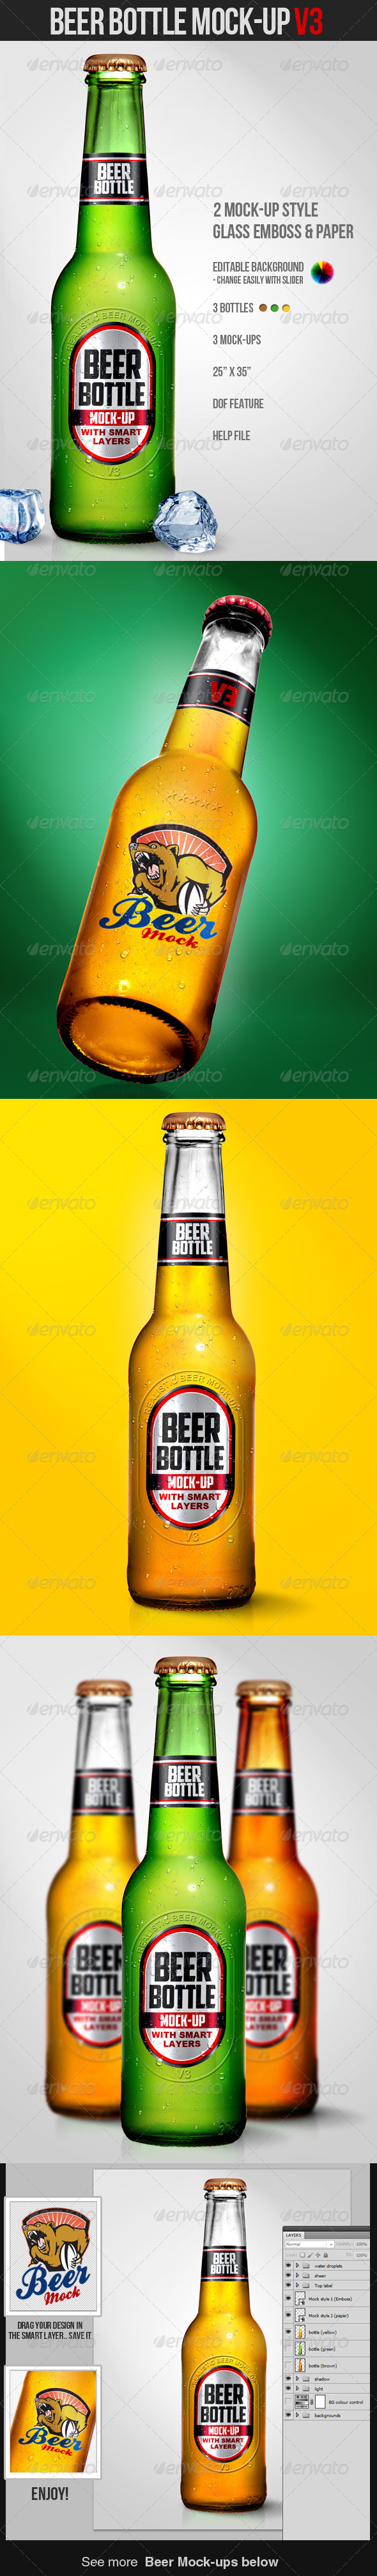 Download Beer Bottle Mock Up V3 By Mixmedia87 Graphicriver